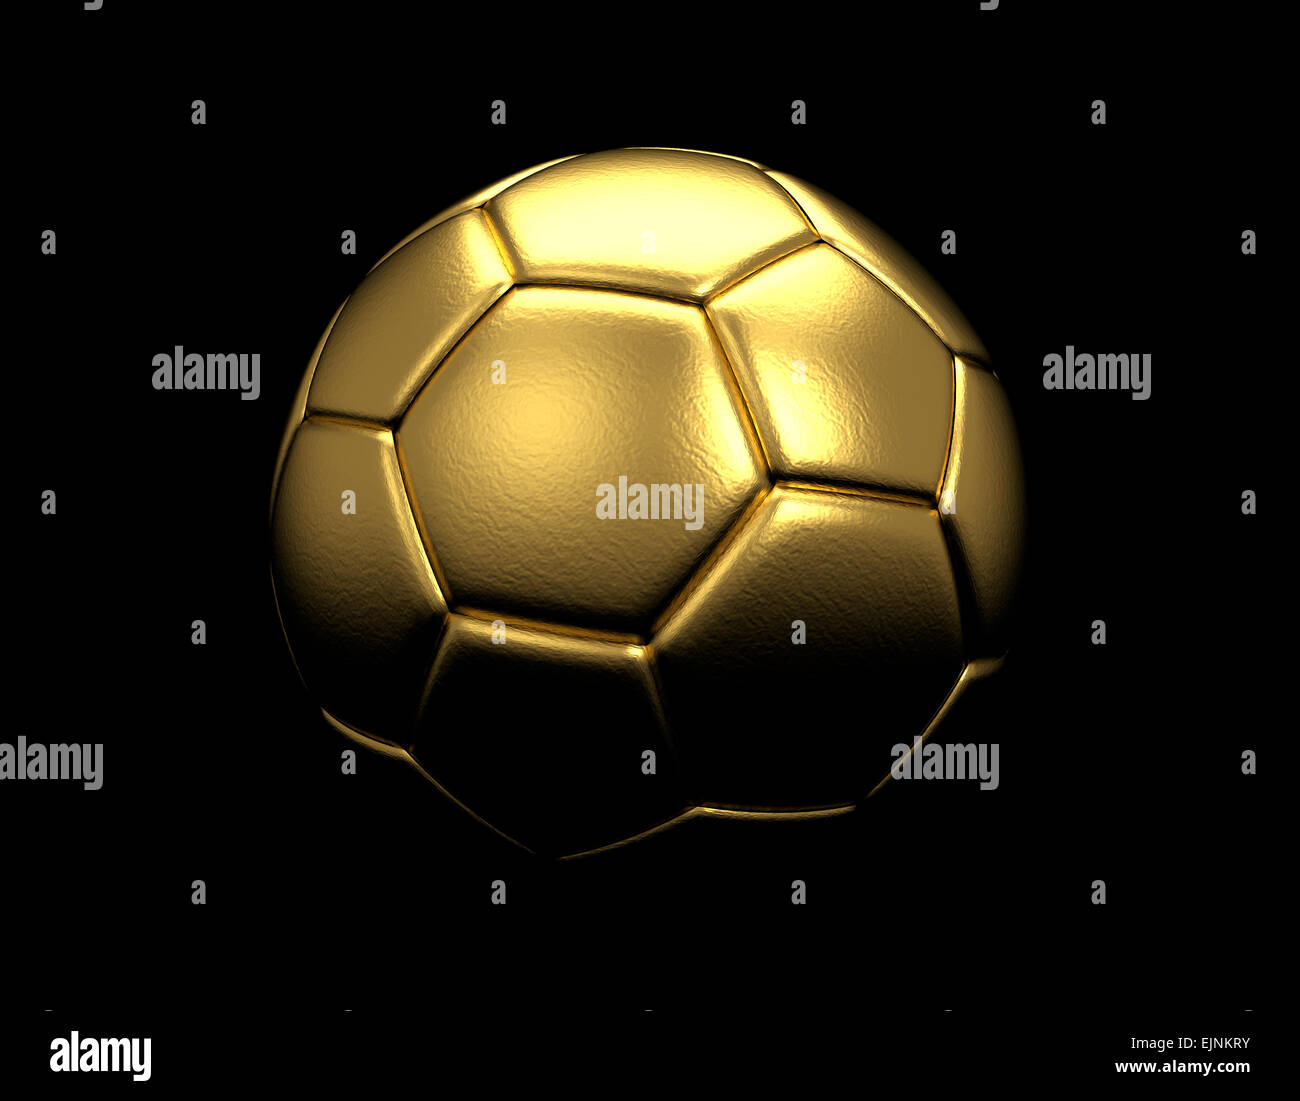 Ballon de soccer d'or isolé sur fond noir Banque D'Images